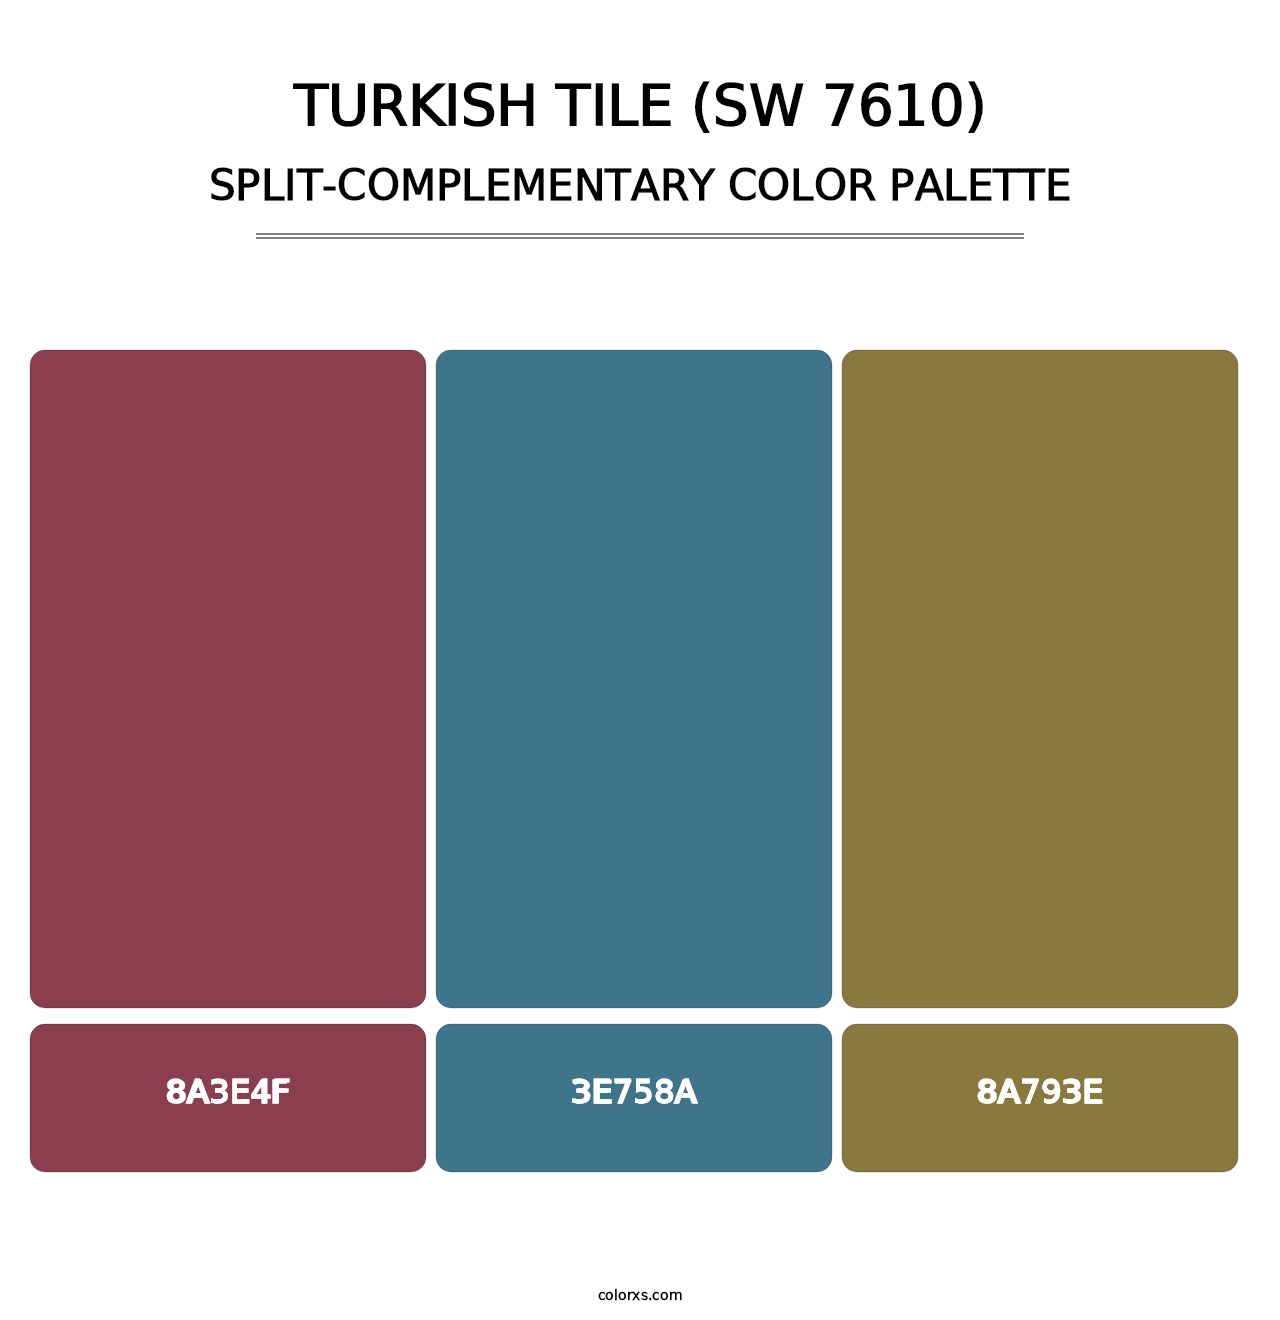 Turkish Tile (SW 7610) - Split-Complementary Color Palette